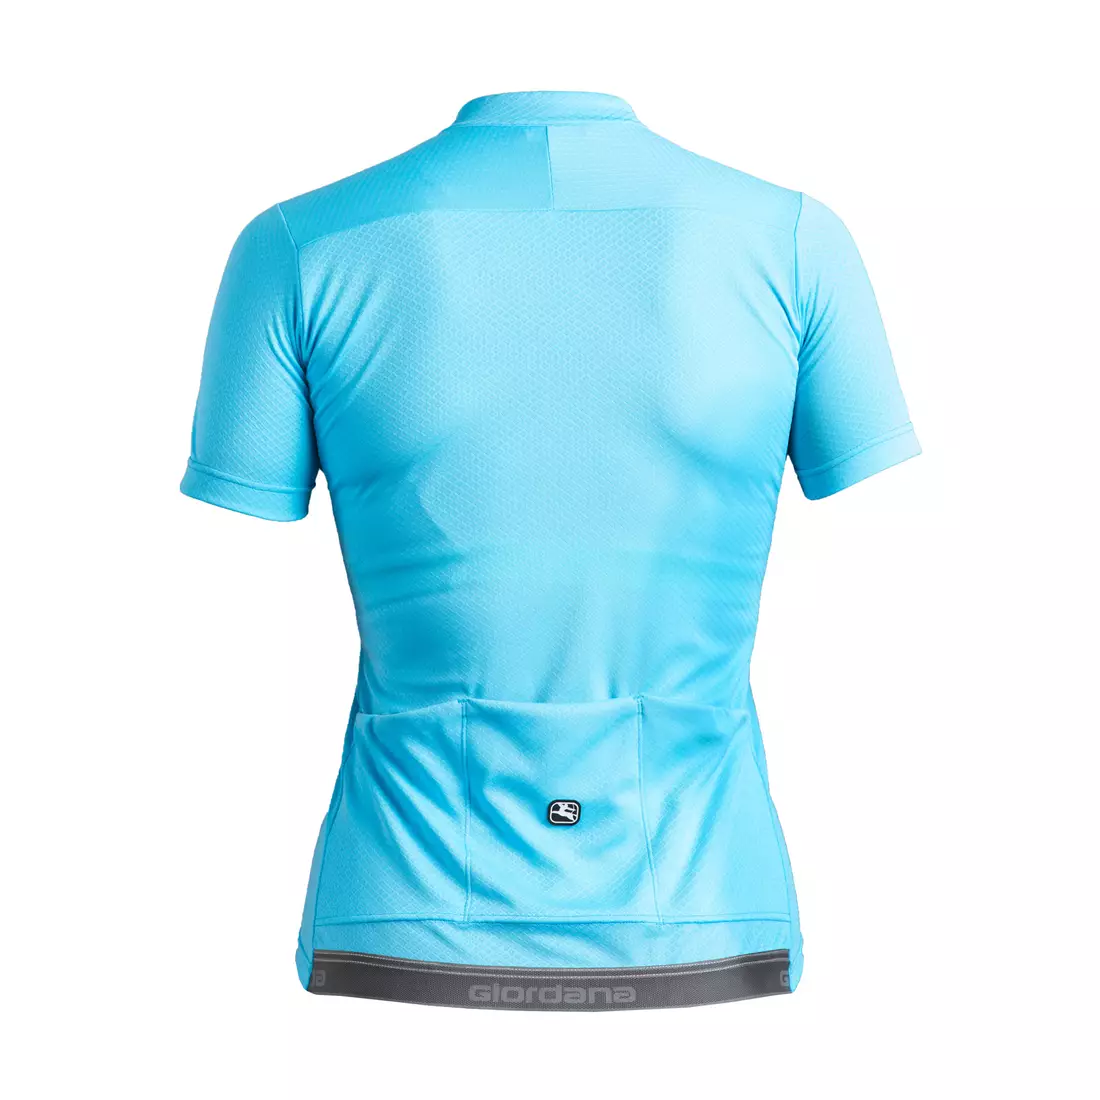 Dámský cyklistický dres GIORDANA FUSION, modrý